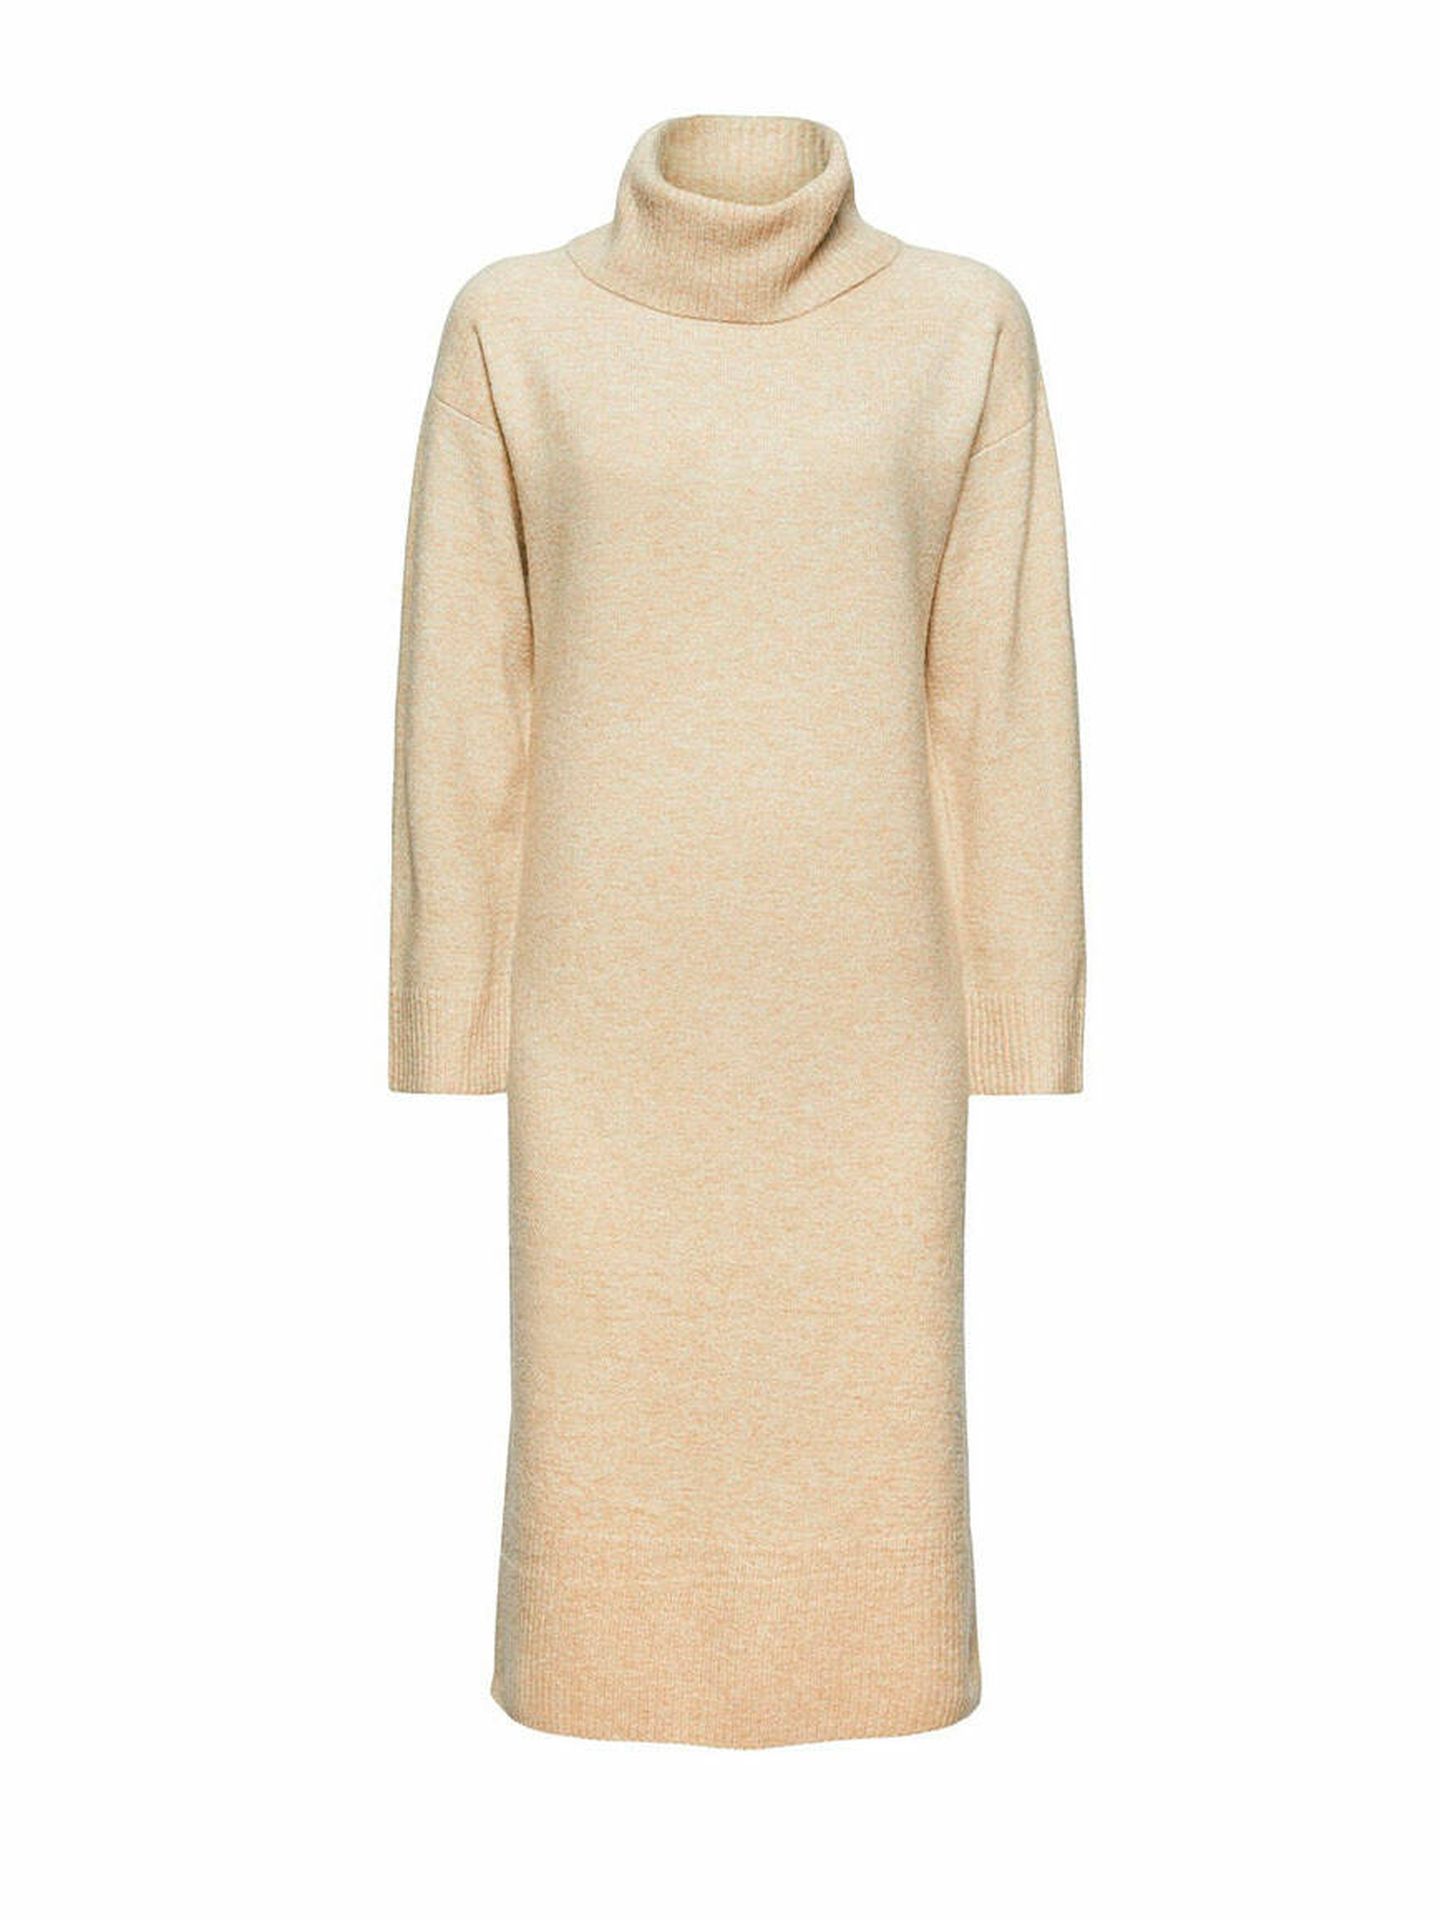 Review Vestido de lana beige estilo sencillo Moda Vestidos Vestidos de lana 